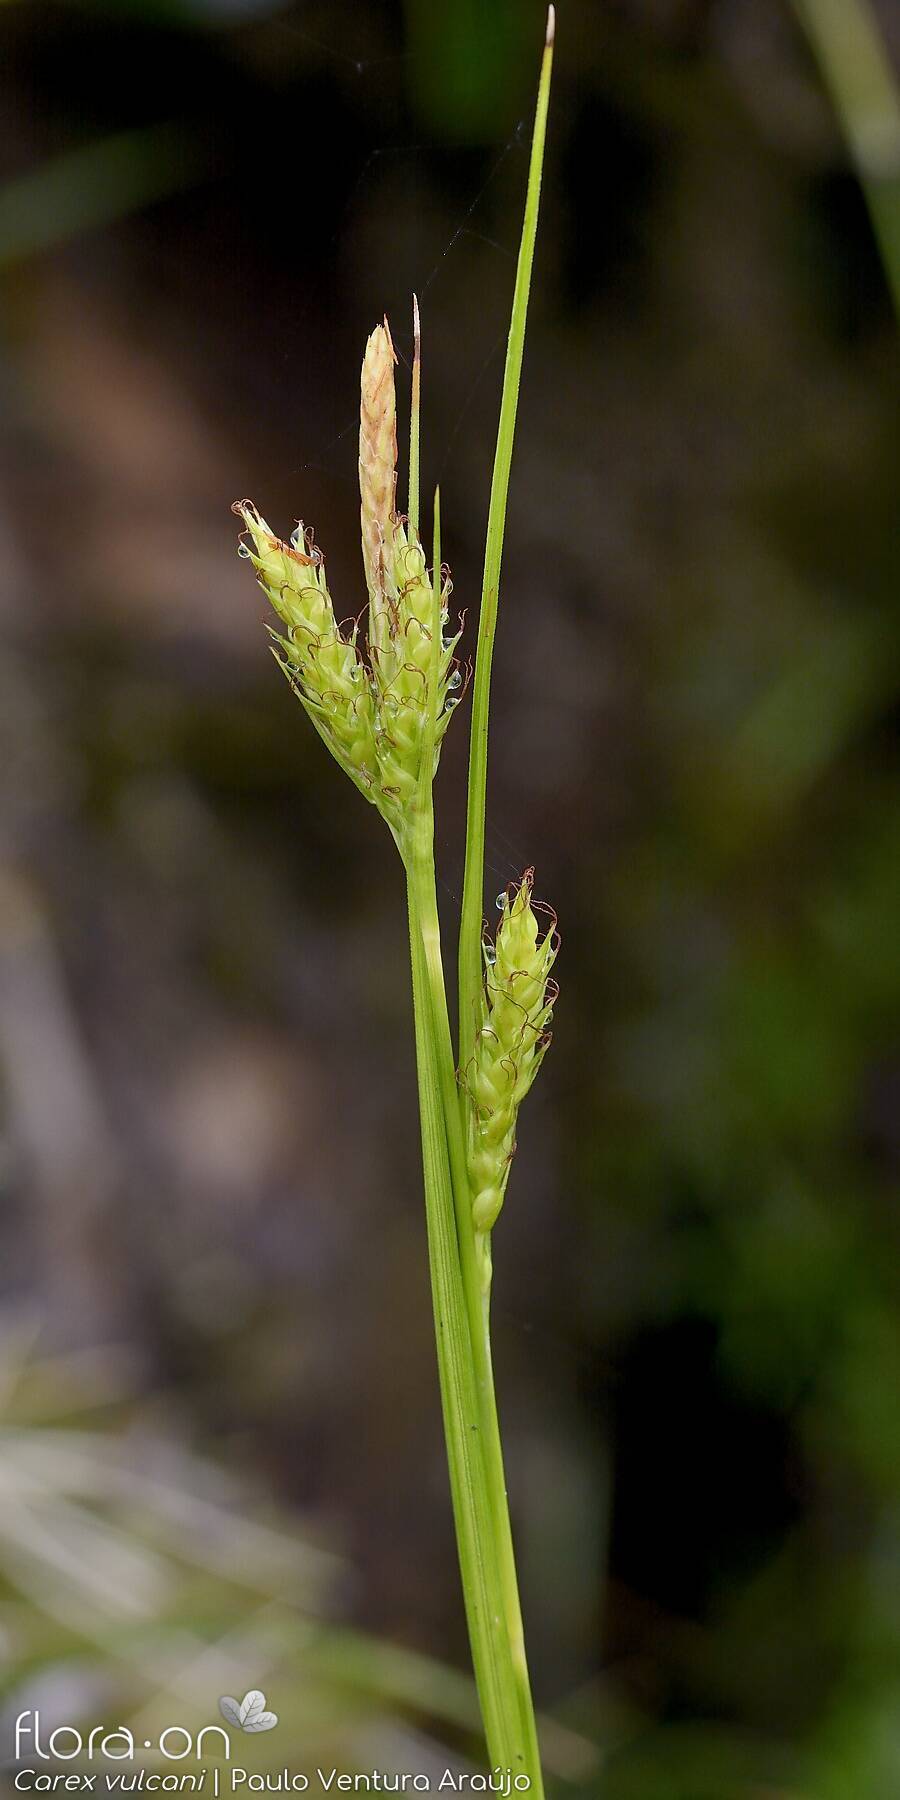 Carex vulcani